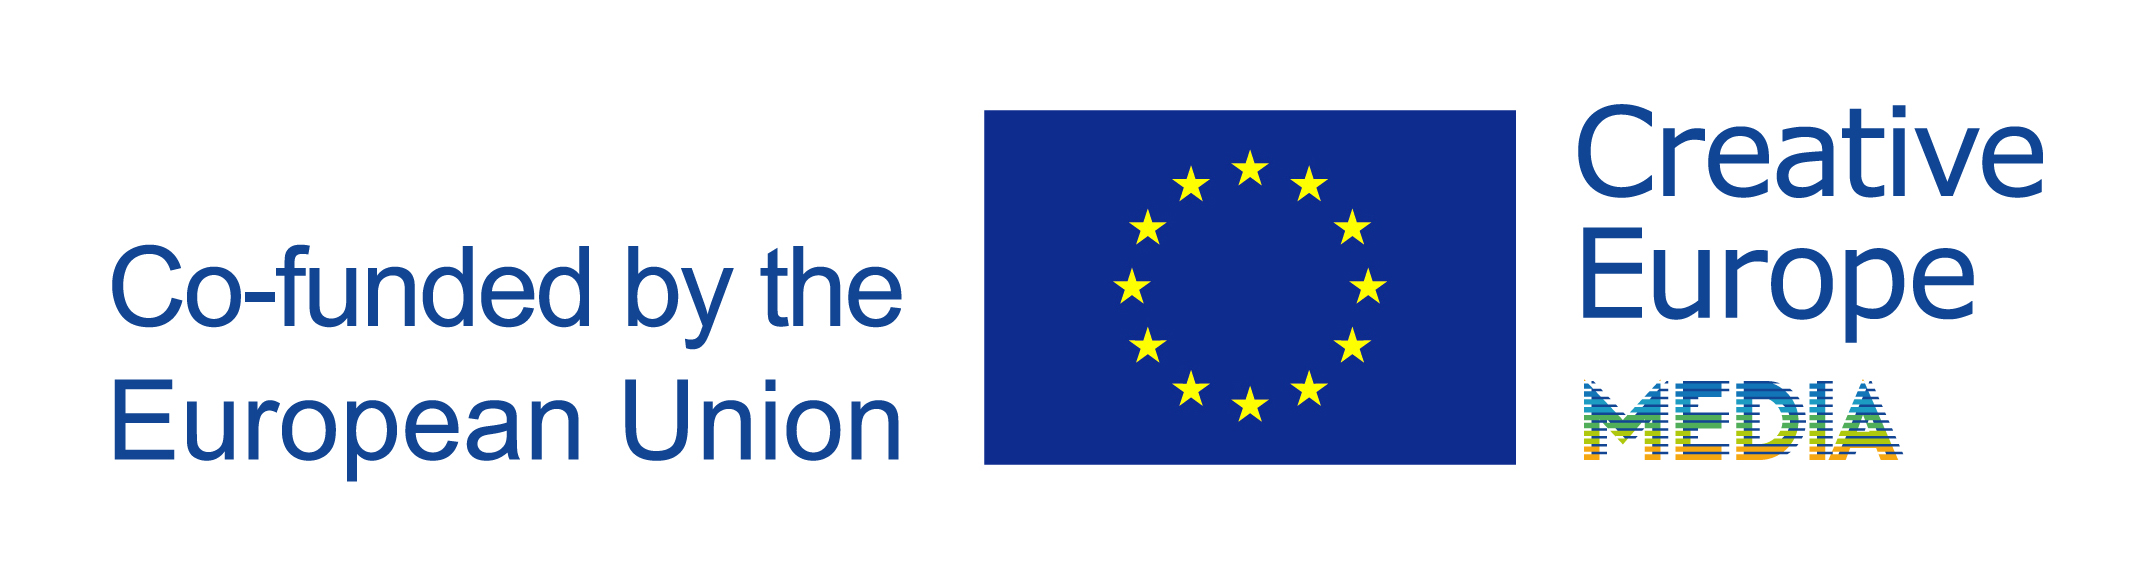 EU Flagge und creative europe media 